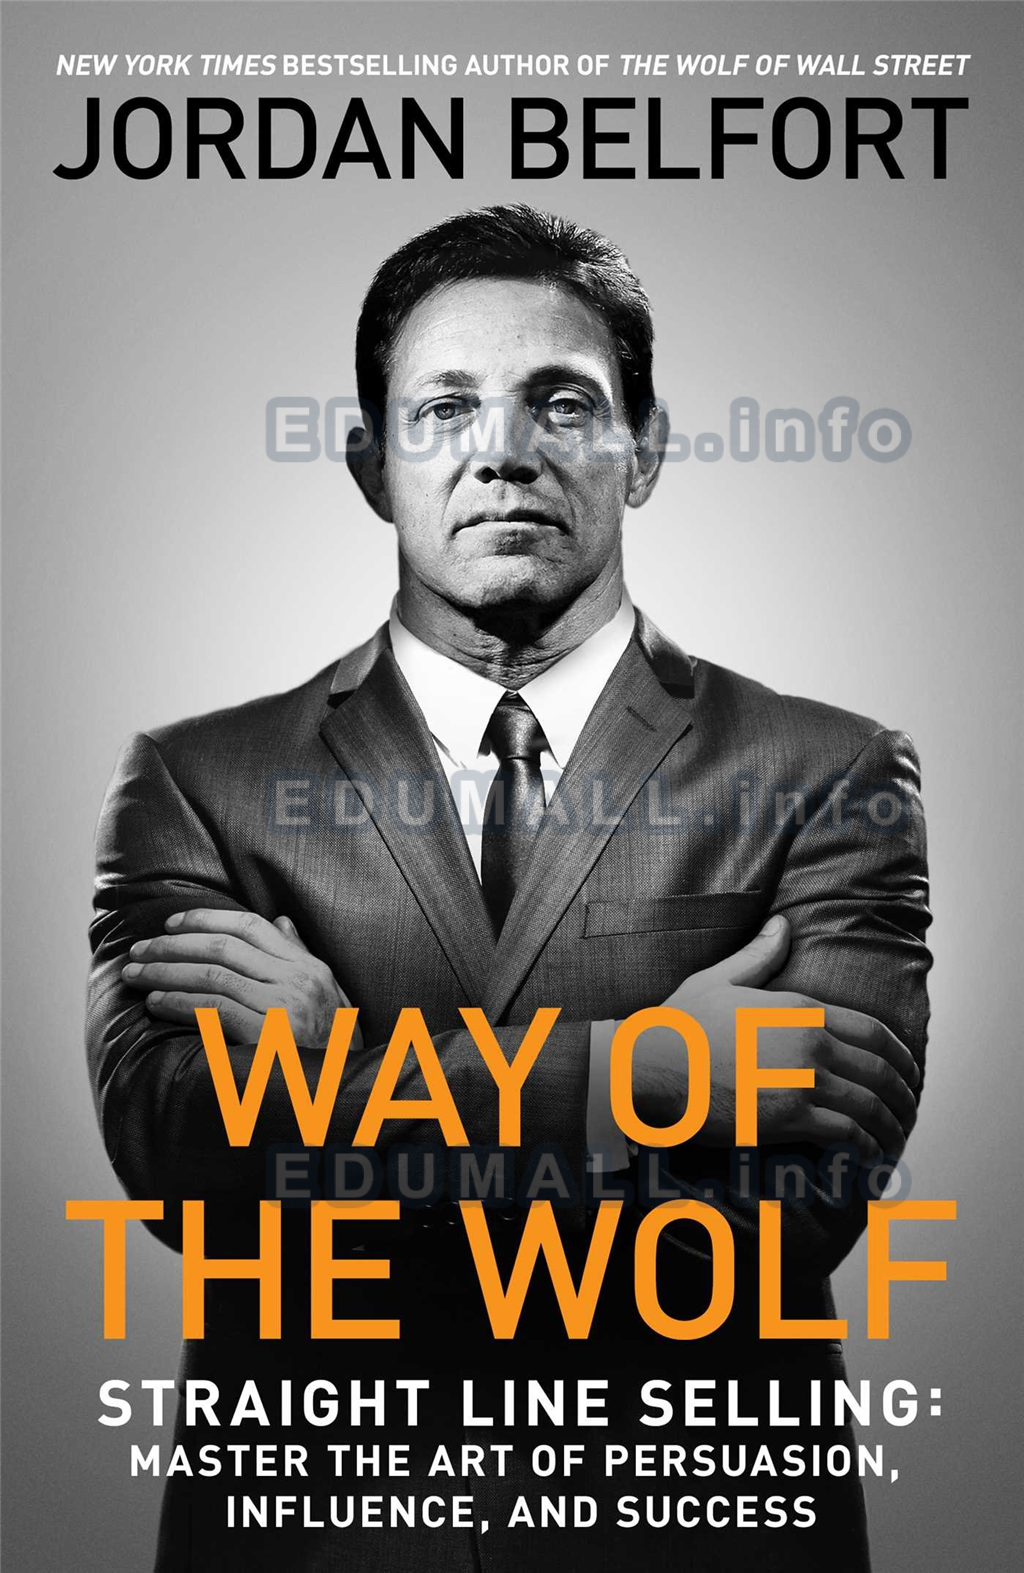 Jordan Belfort - The Wolf’s Weekly